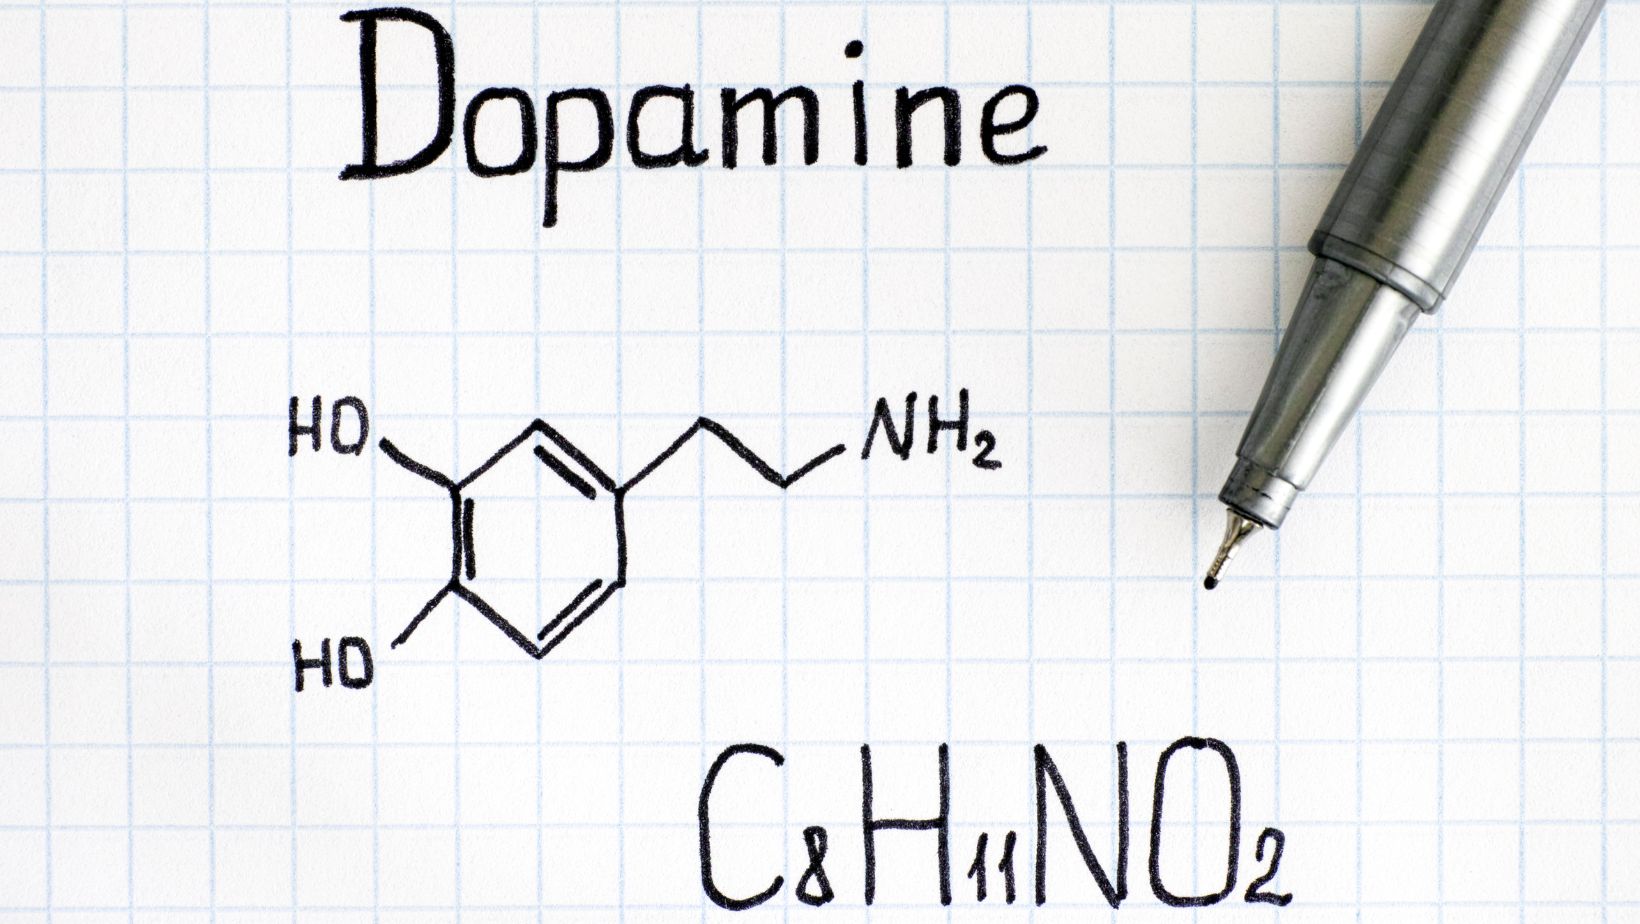 napis dopamina, wzór chemiczny dopaminy narysowane na kartce papieru 